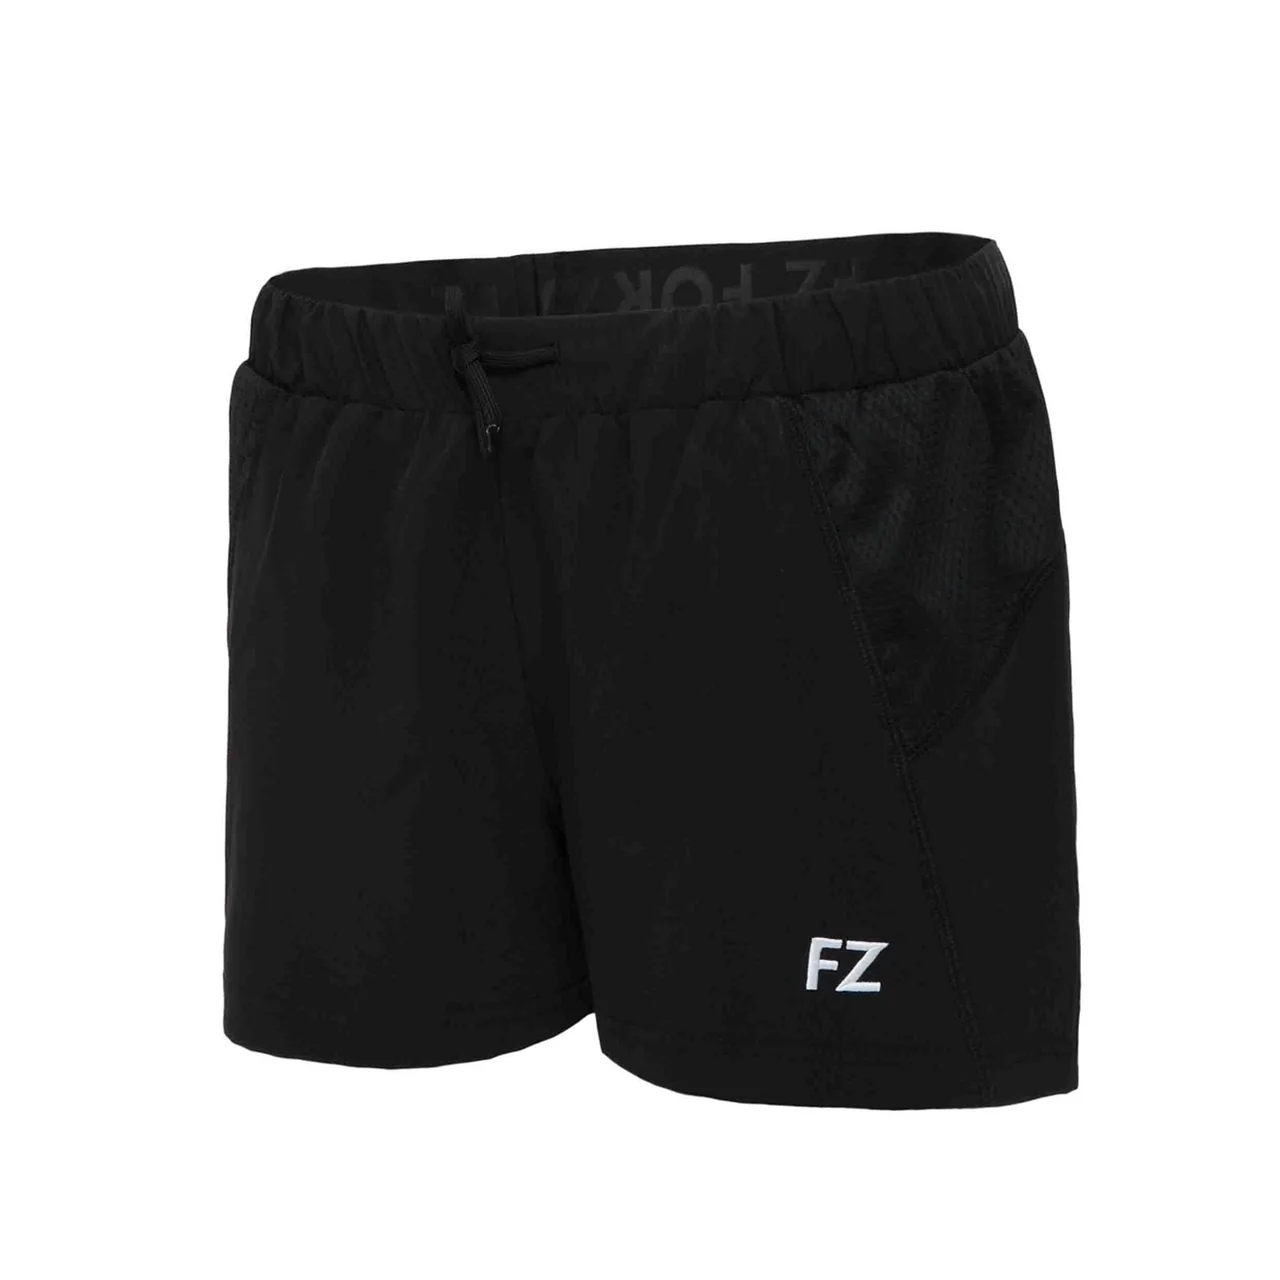 FZ Forza Lana Women Shorts Black